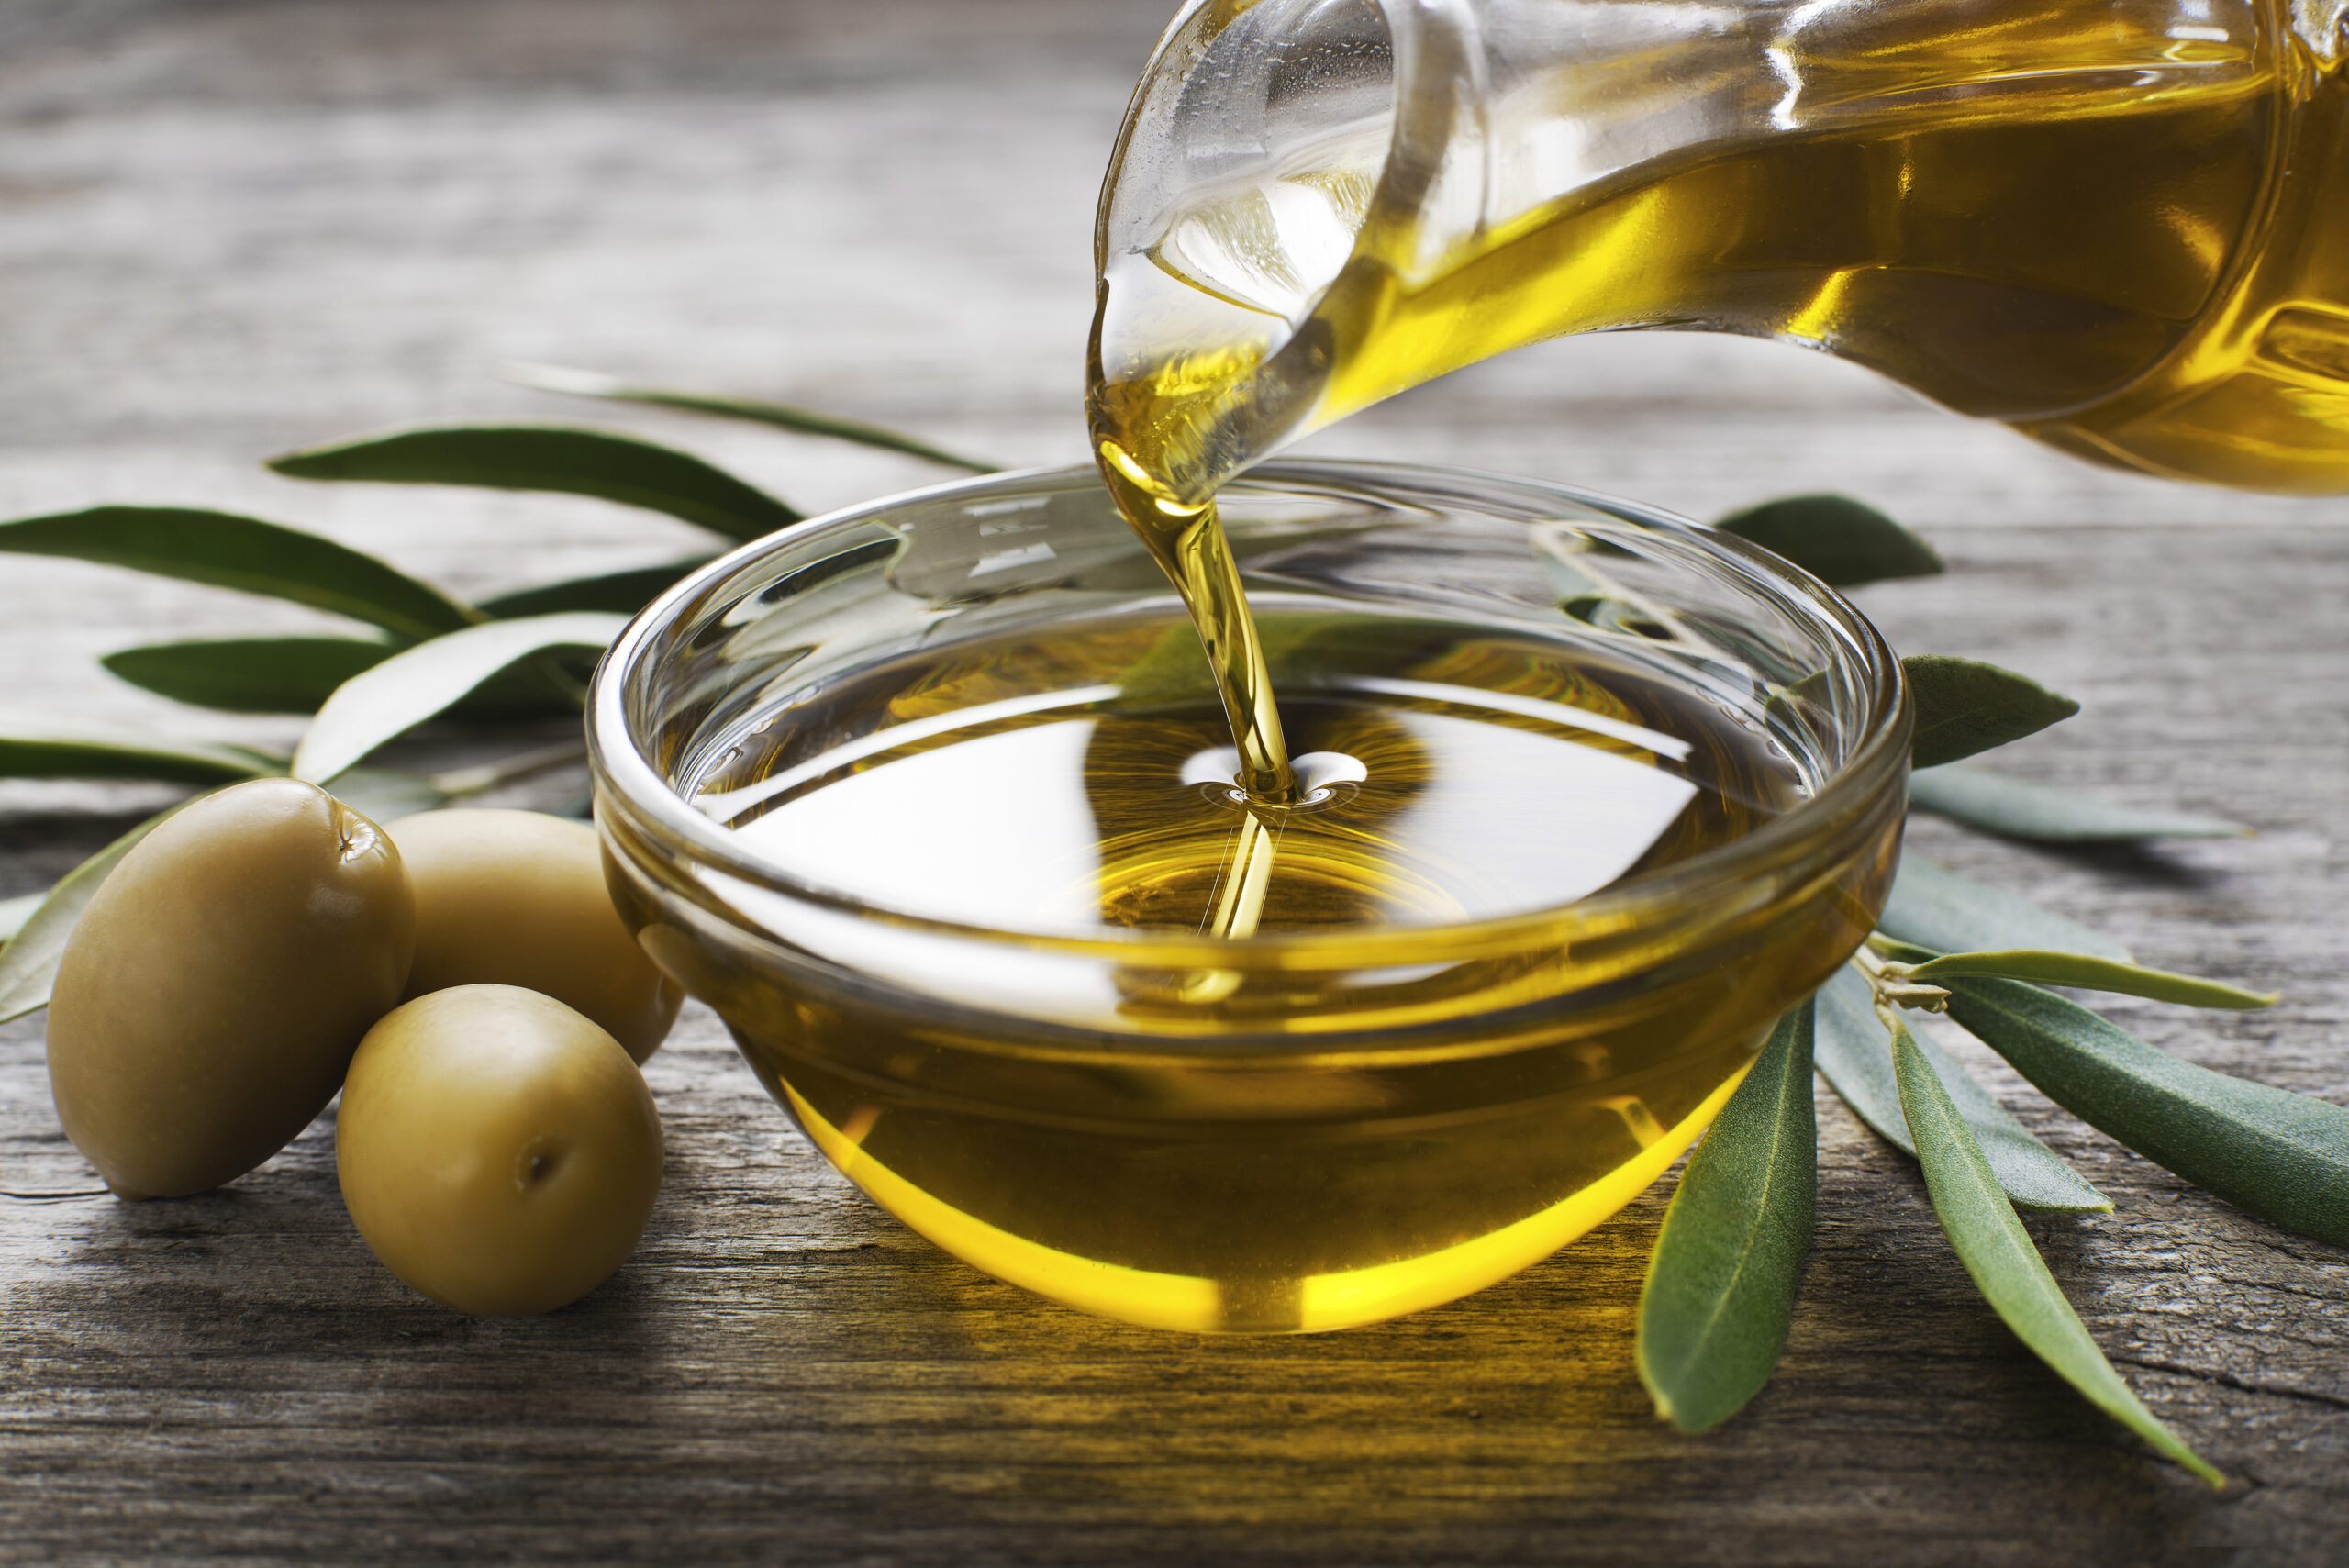 un cucchiaio di olio di oliva la mattina può abbassare la glicemia?